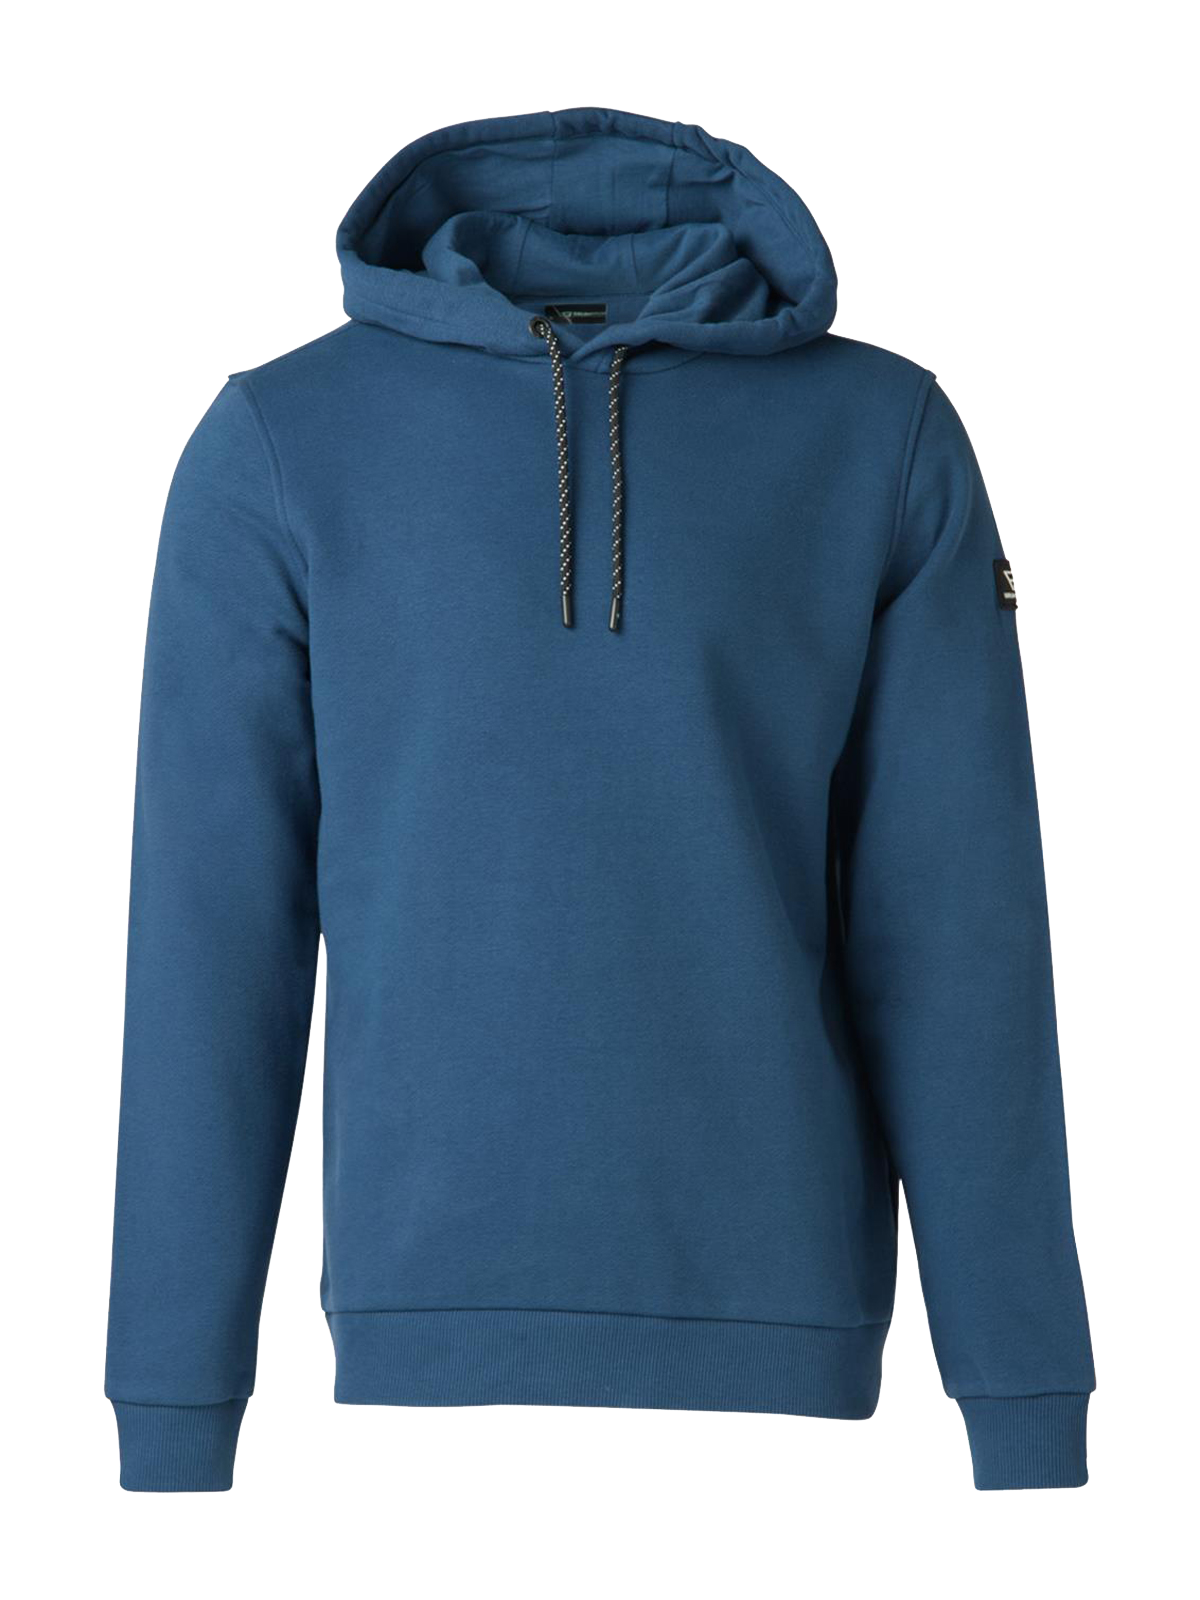 Patcher-N Herren Sweatshirt | Blau
